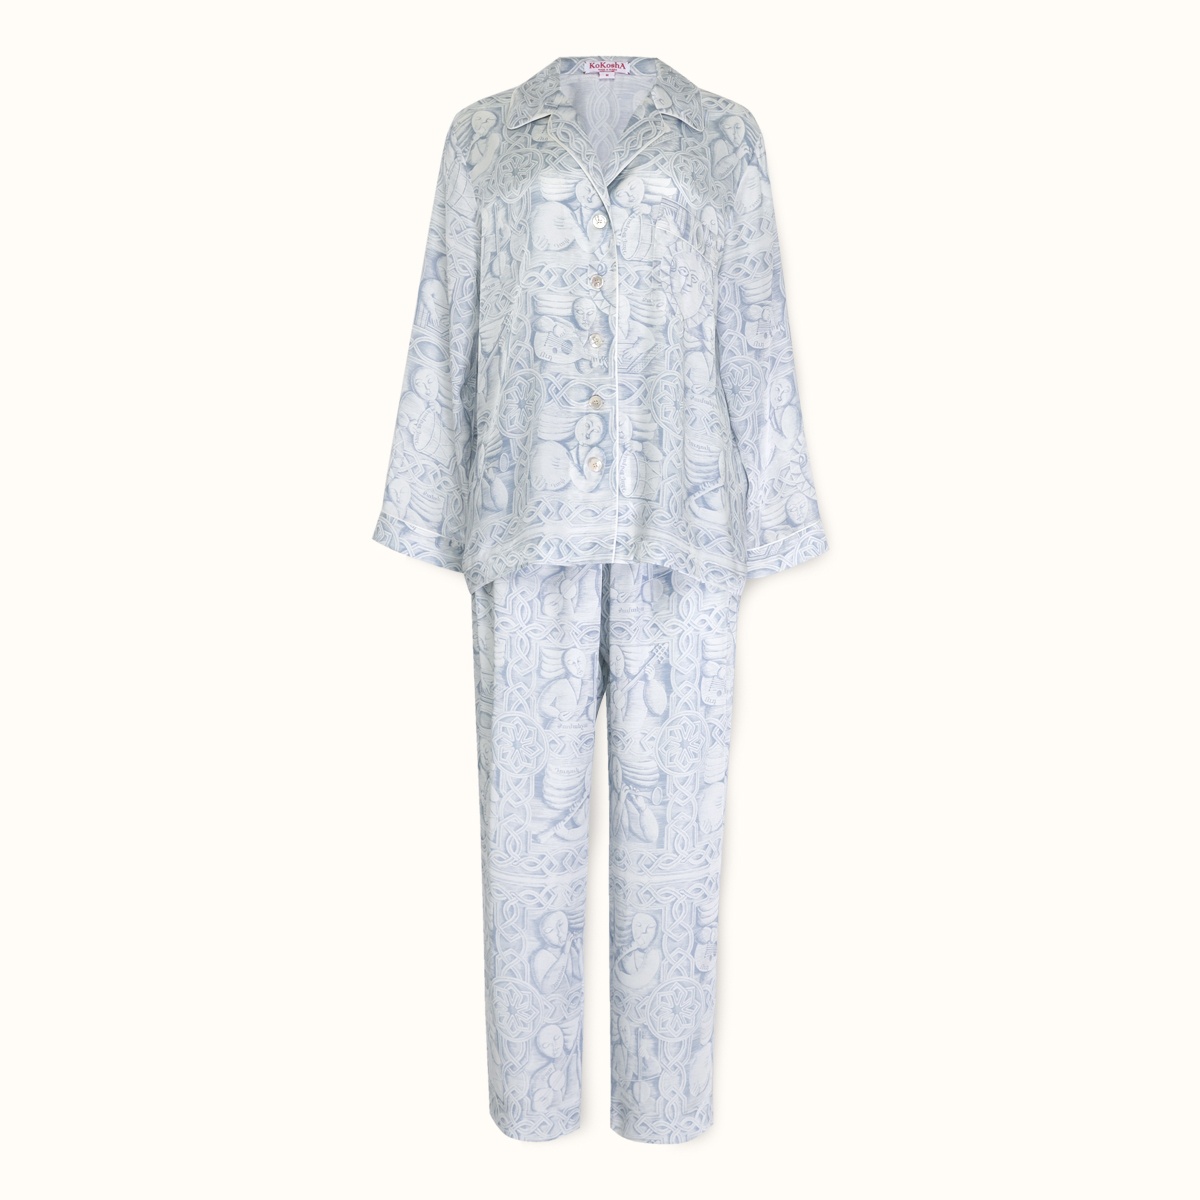 Pajamas "MUSICIANS" blue cotton-silk by Kokosha - Pajamas